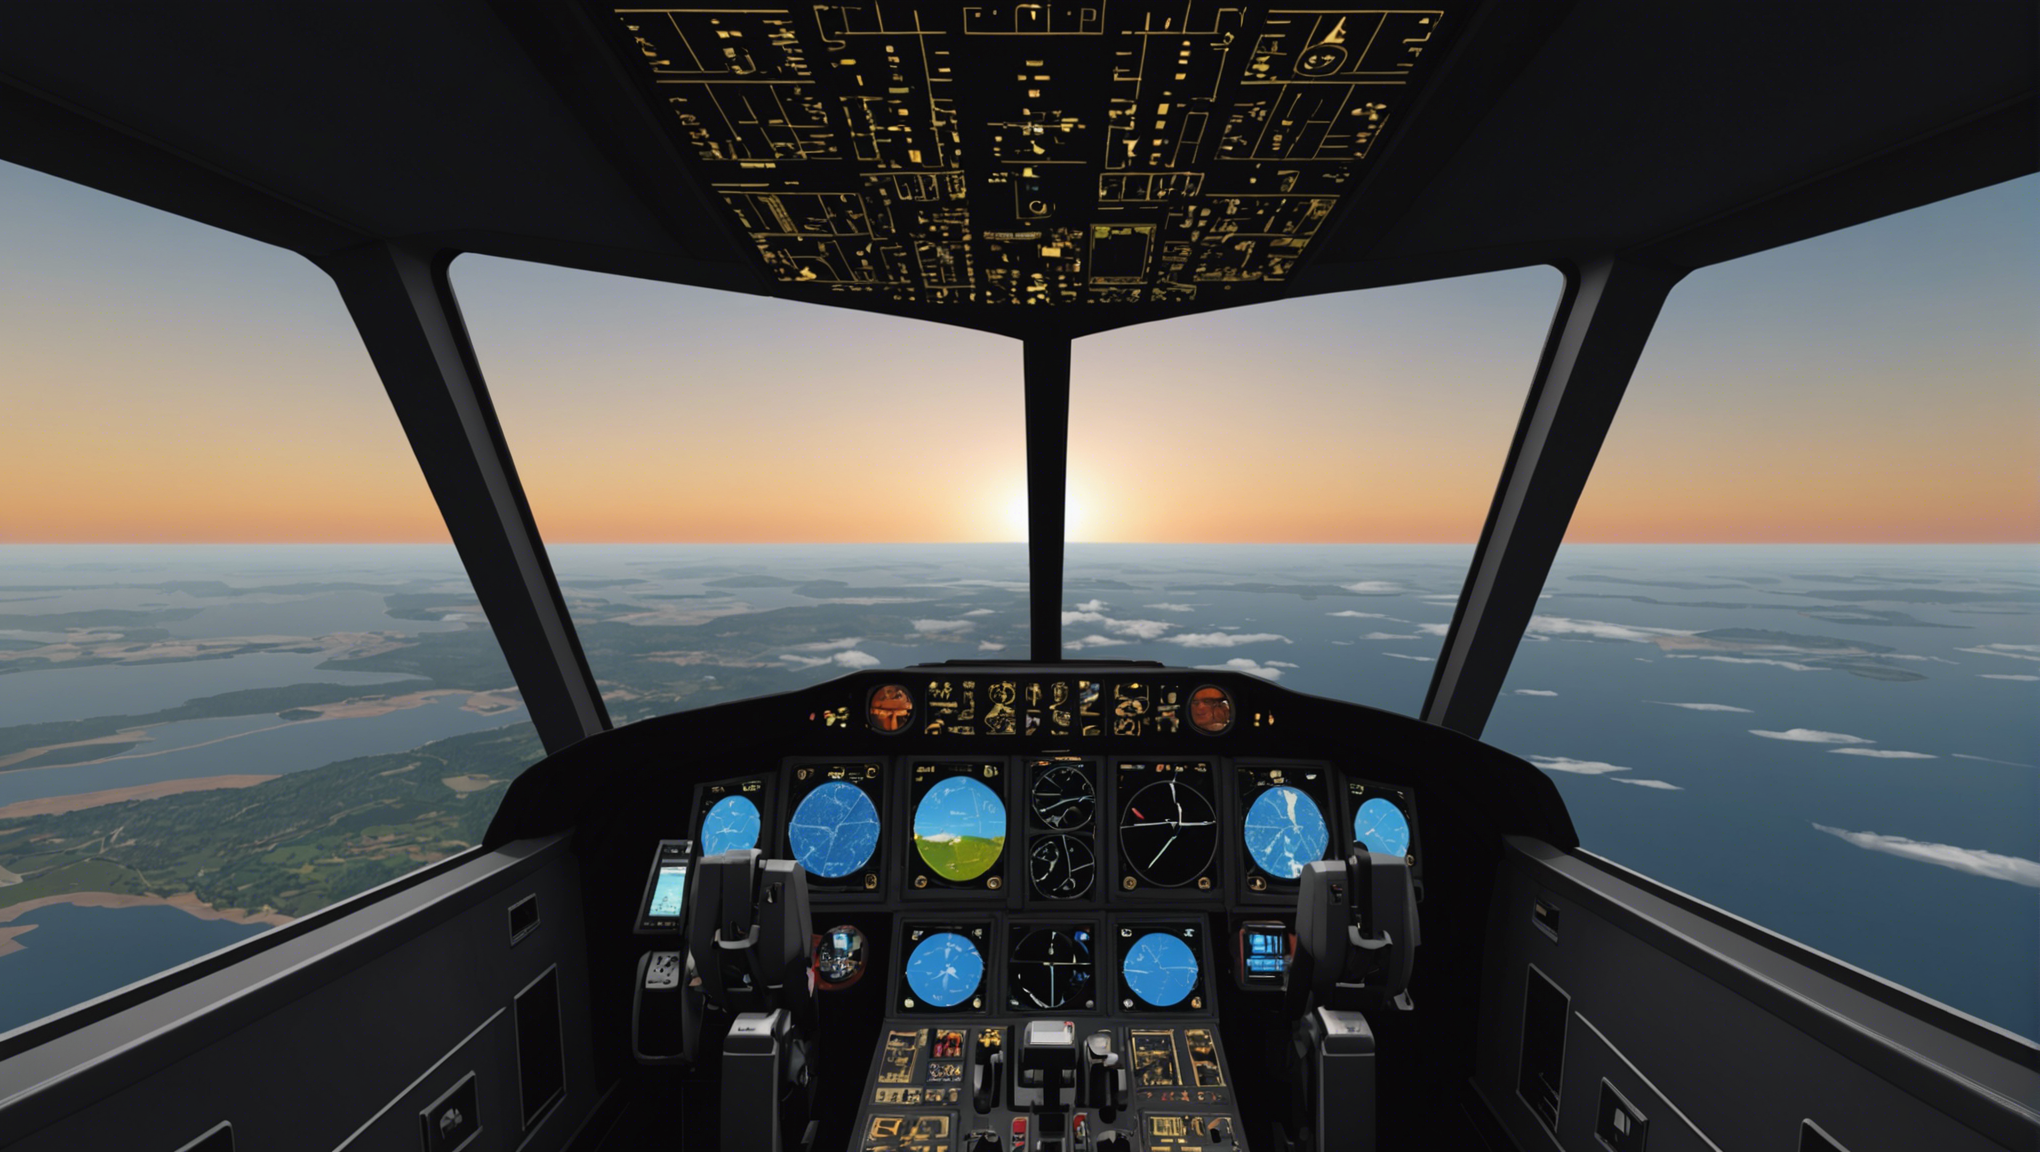 découvrez une expérience de vol immersive inégalée avec l'animation vr vol flight simulator. pilotez comme un pro dans des environnements virtuels captivants et ressentez l'adrénaline des cieux. embarquez dès maintenant pour une aventure inoubliable !